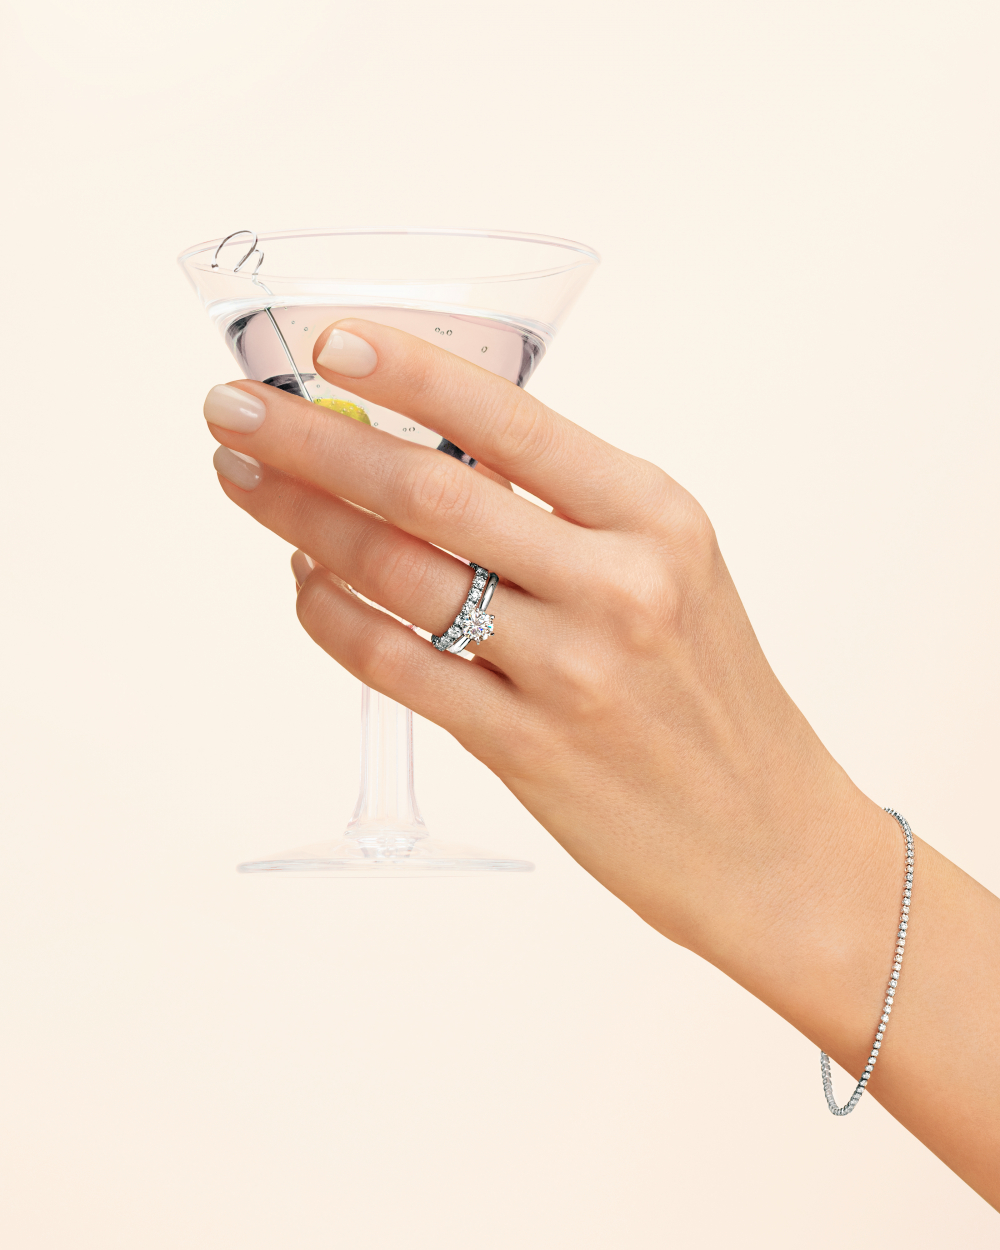 Сохраните Ваши лучшие моменты с украшениями LA VIVION.
⠀
На фото:
• помолвочное кольцо с бриллиантом весом 0.50 карата

• кольцо-дорожка с бриллиантами общим весом 1.50 карата
